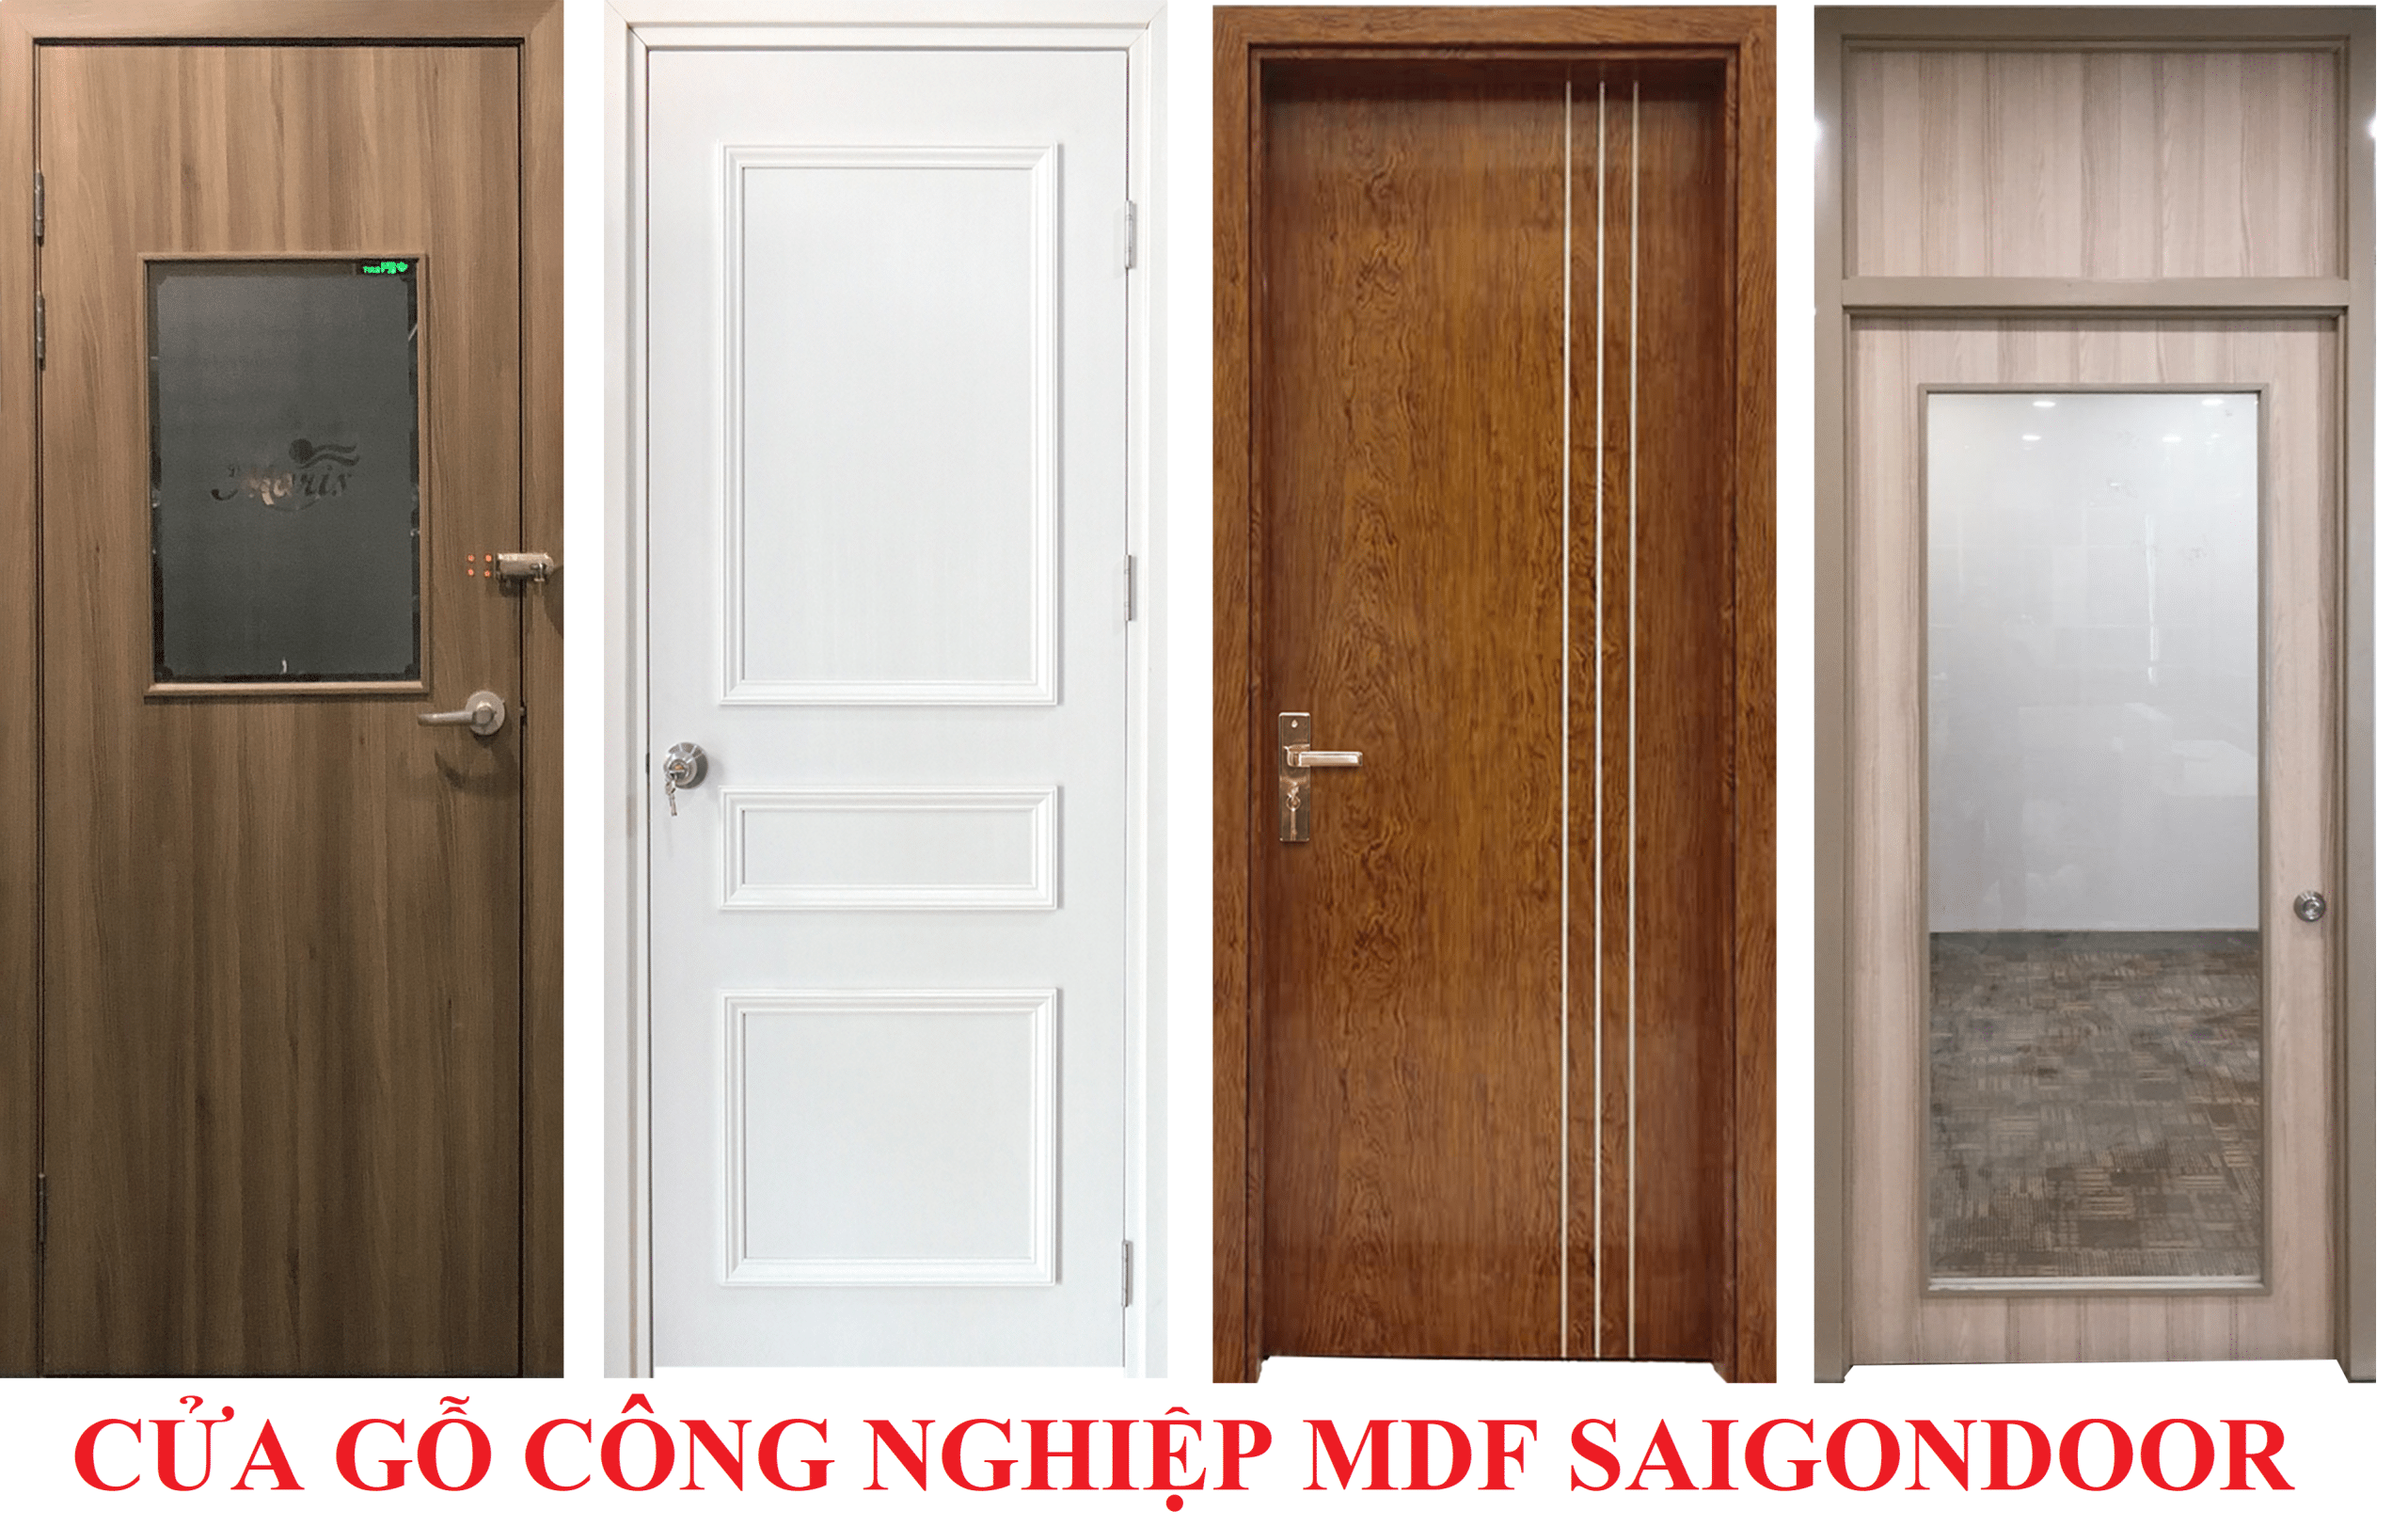 Báo giá cửa gỗ công nghiệp MDF Veneer giá rẻ nhất  Cua-go-cong-nghiep-SGD-Melamine-P1G11